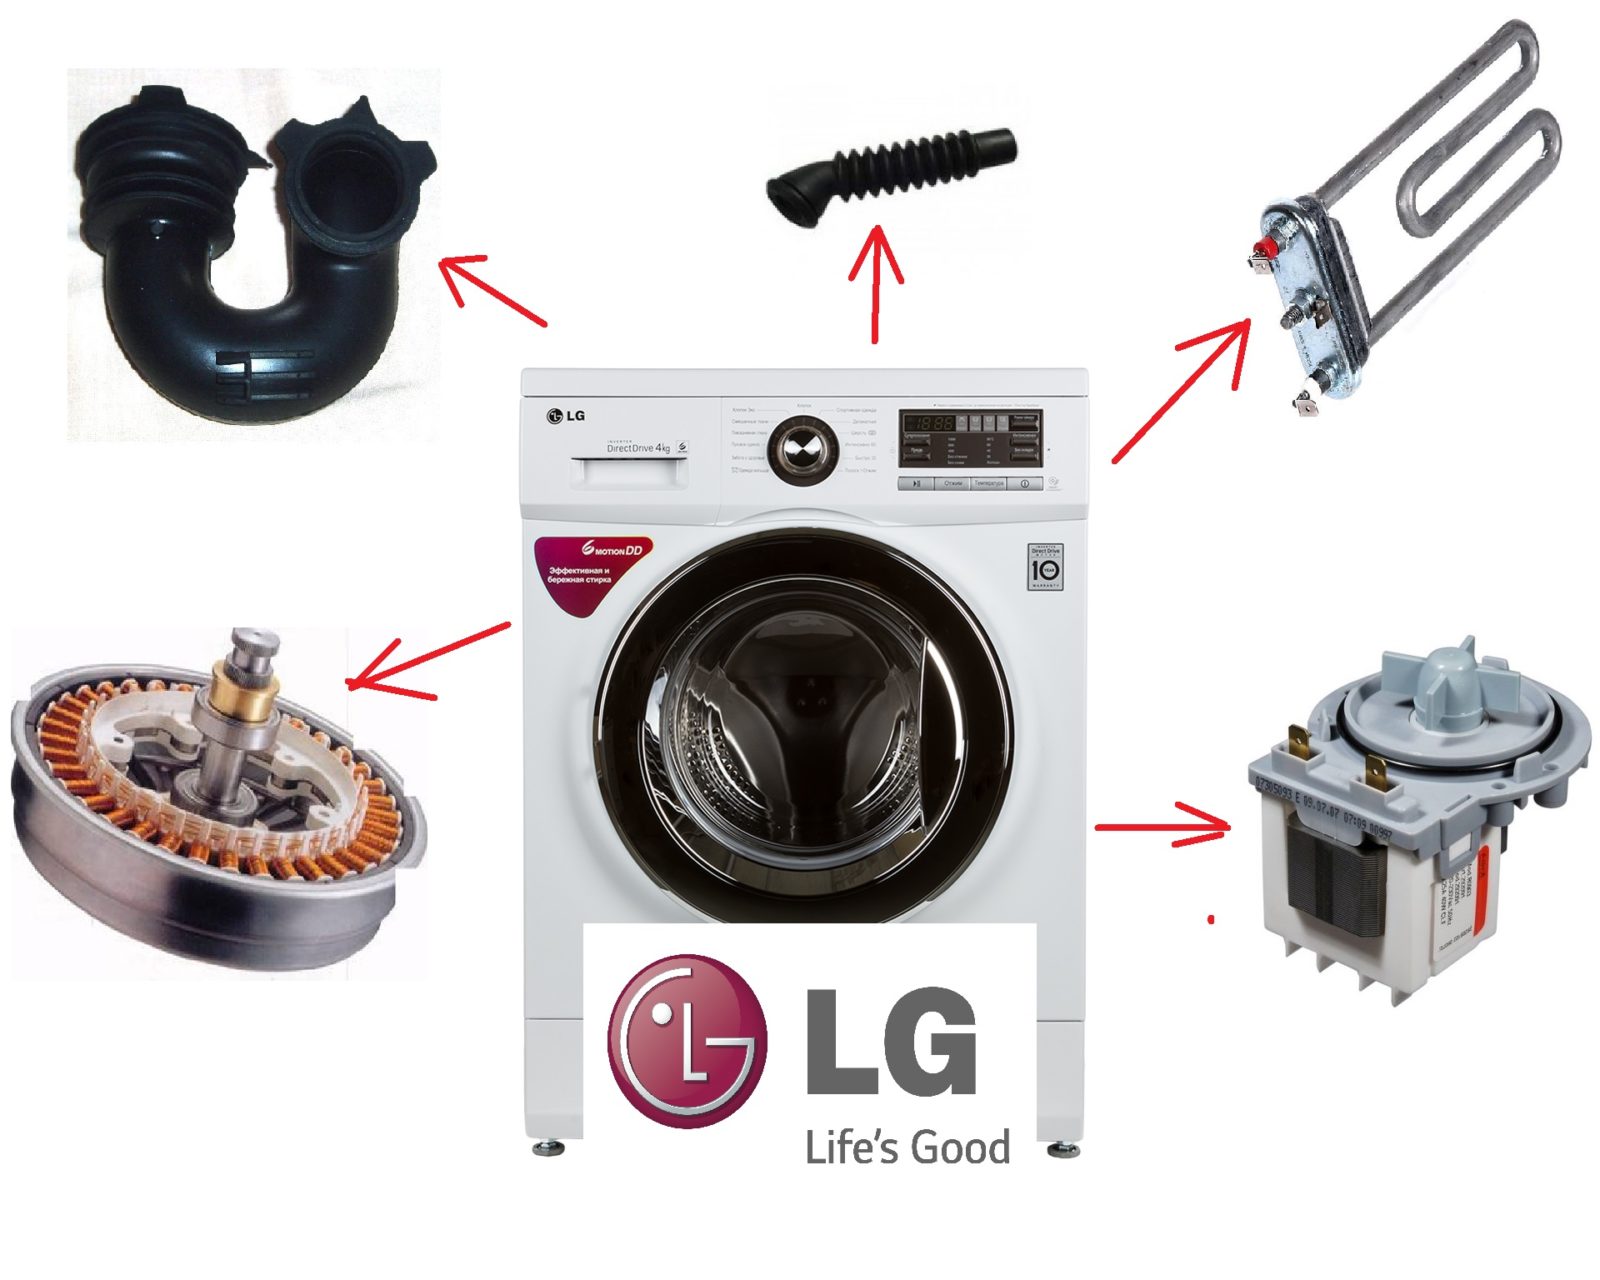 Desmontagem DIY da máquina de lavar roupa LG